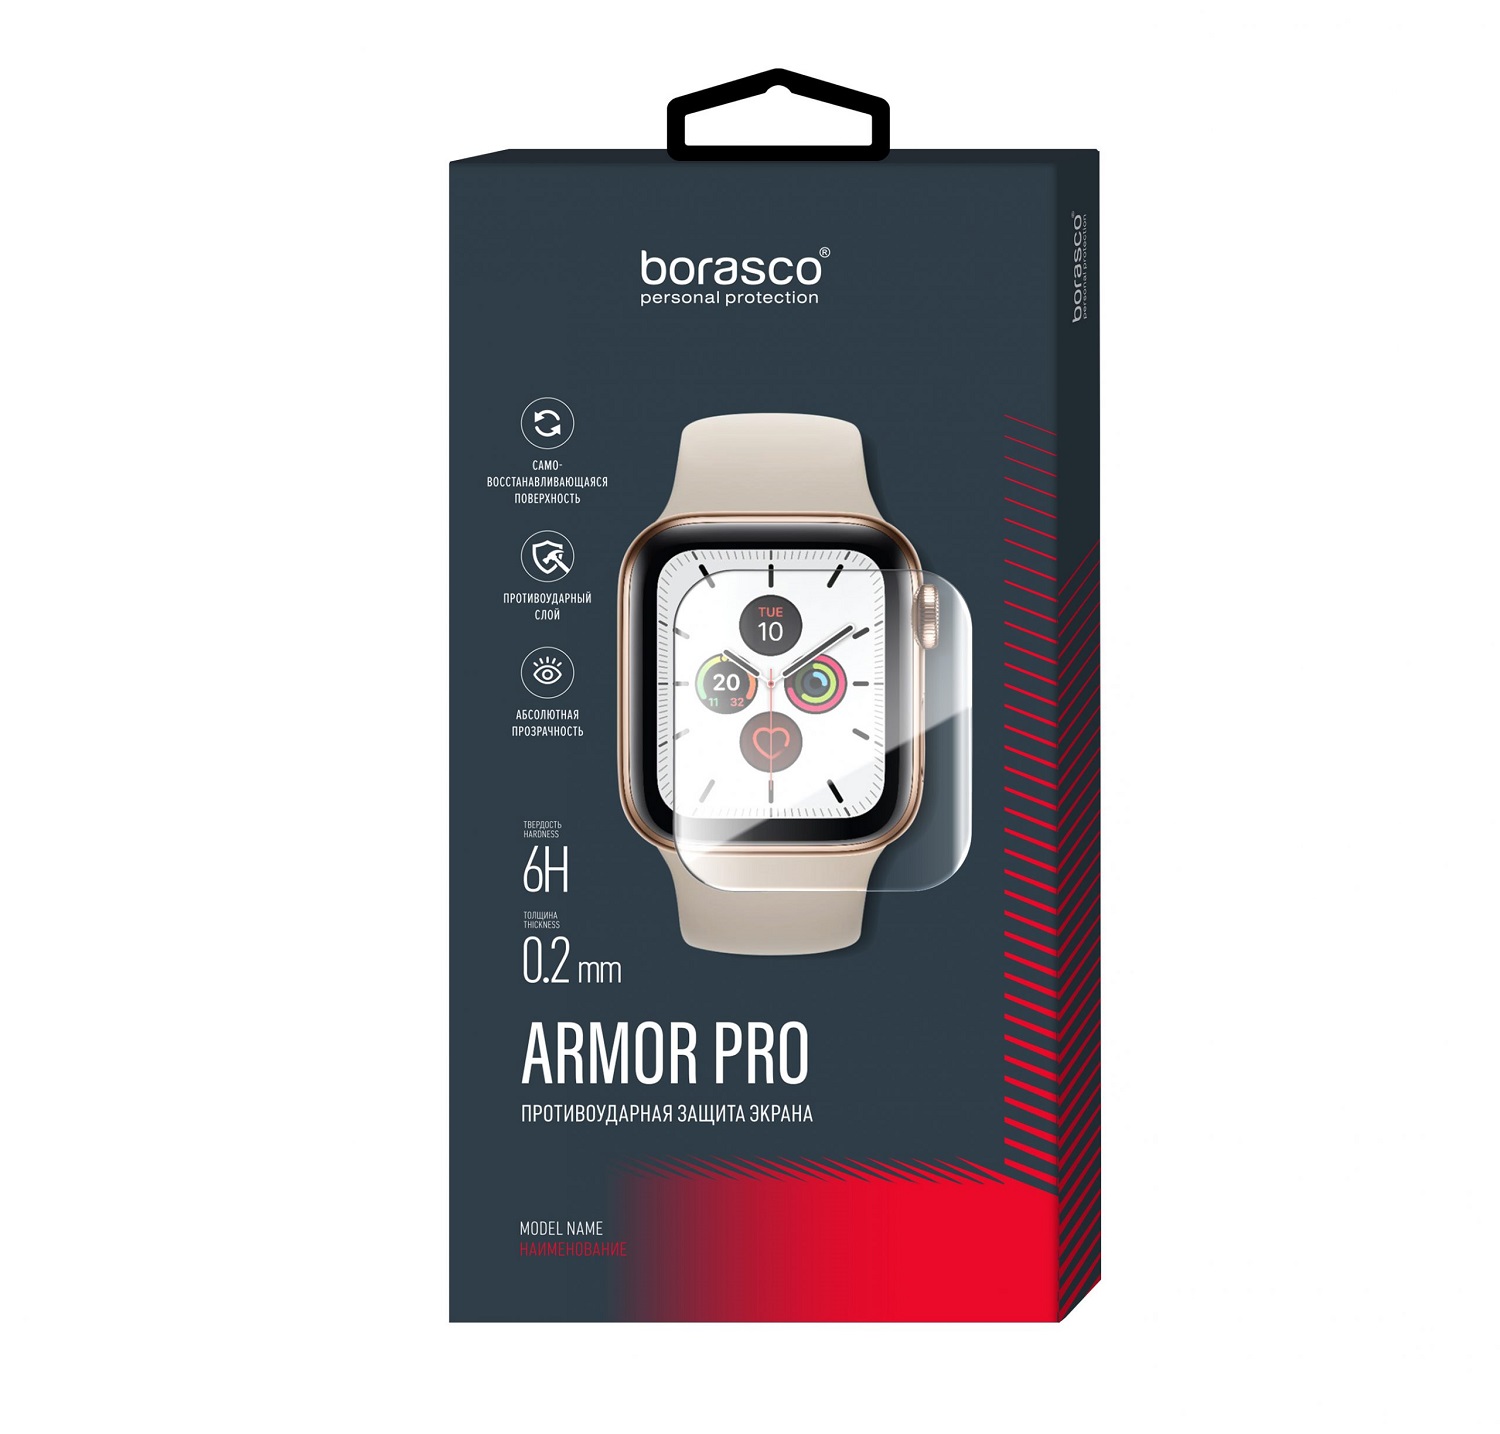 Защита экрана BoraSCO Armor Pro для Xiaomi Mi band 2 защита экрана borasco armor pro для honor band 4 5